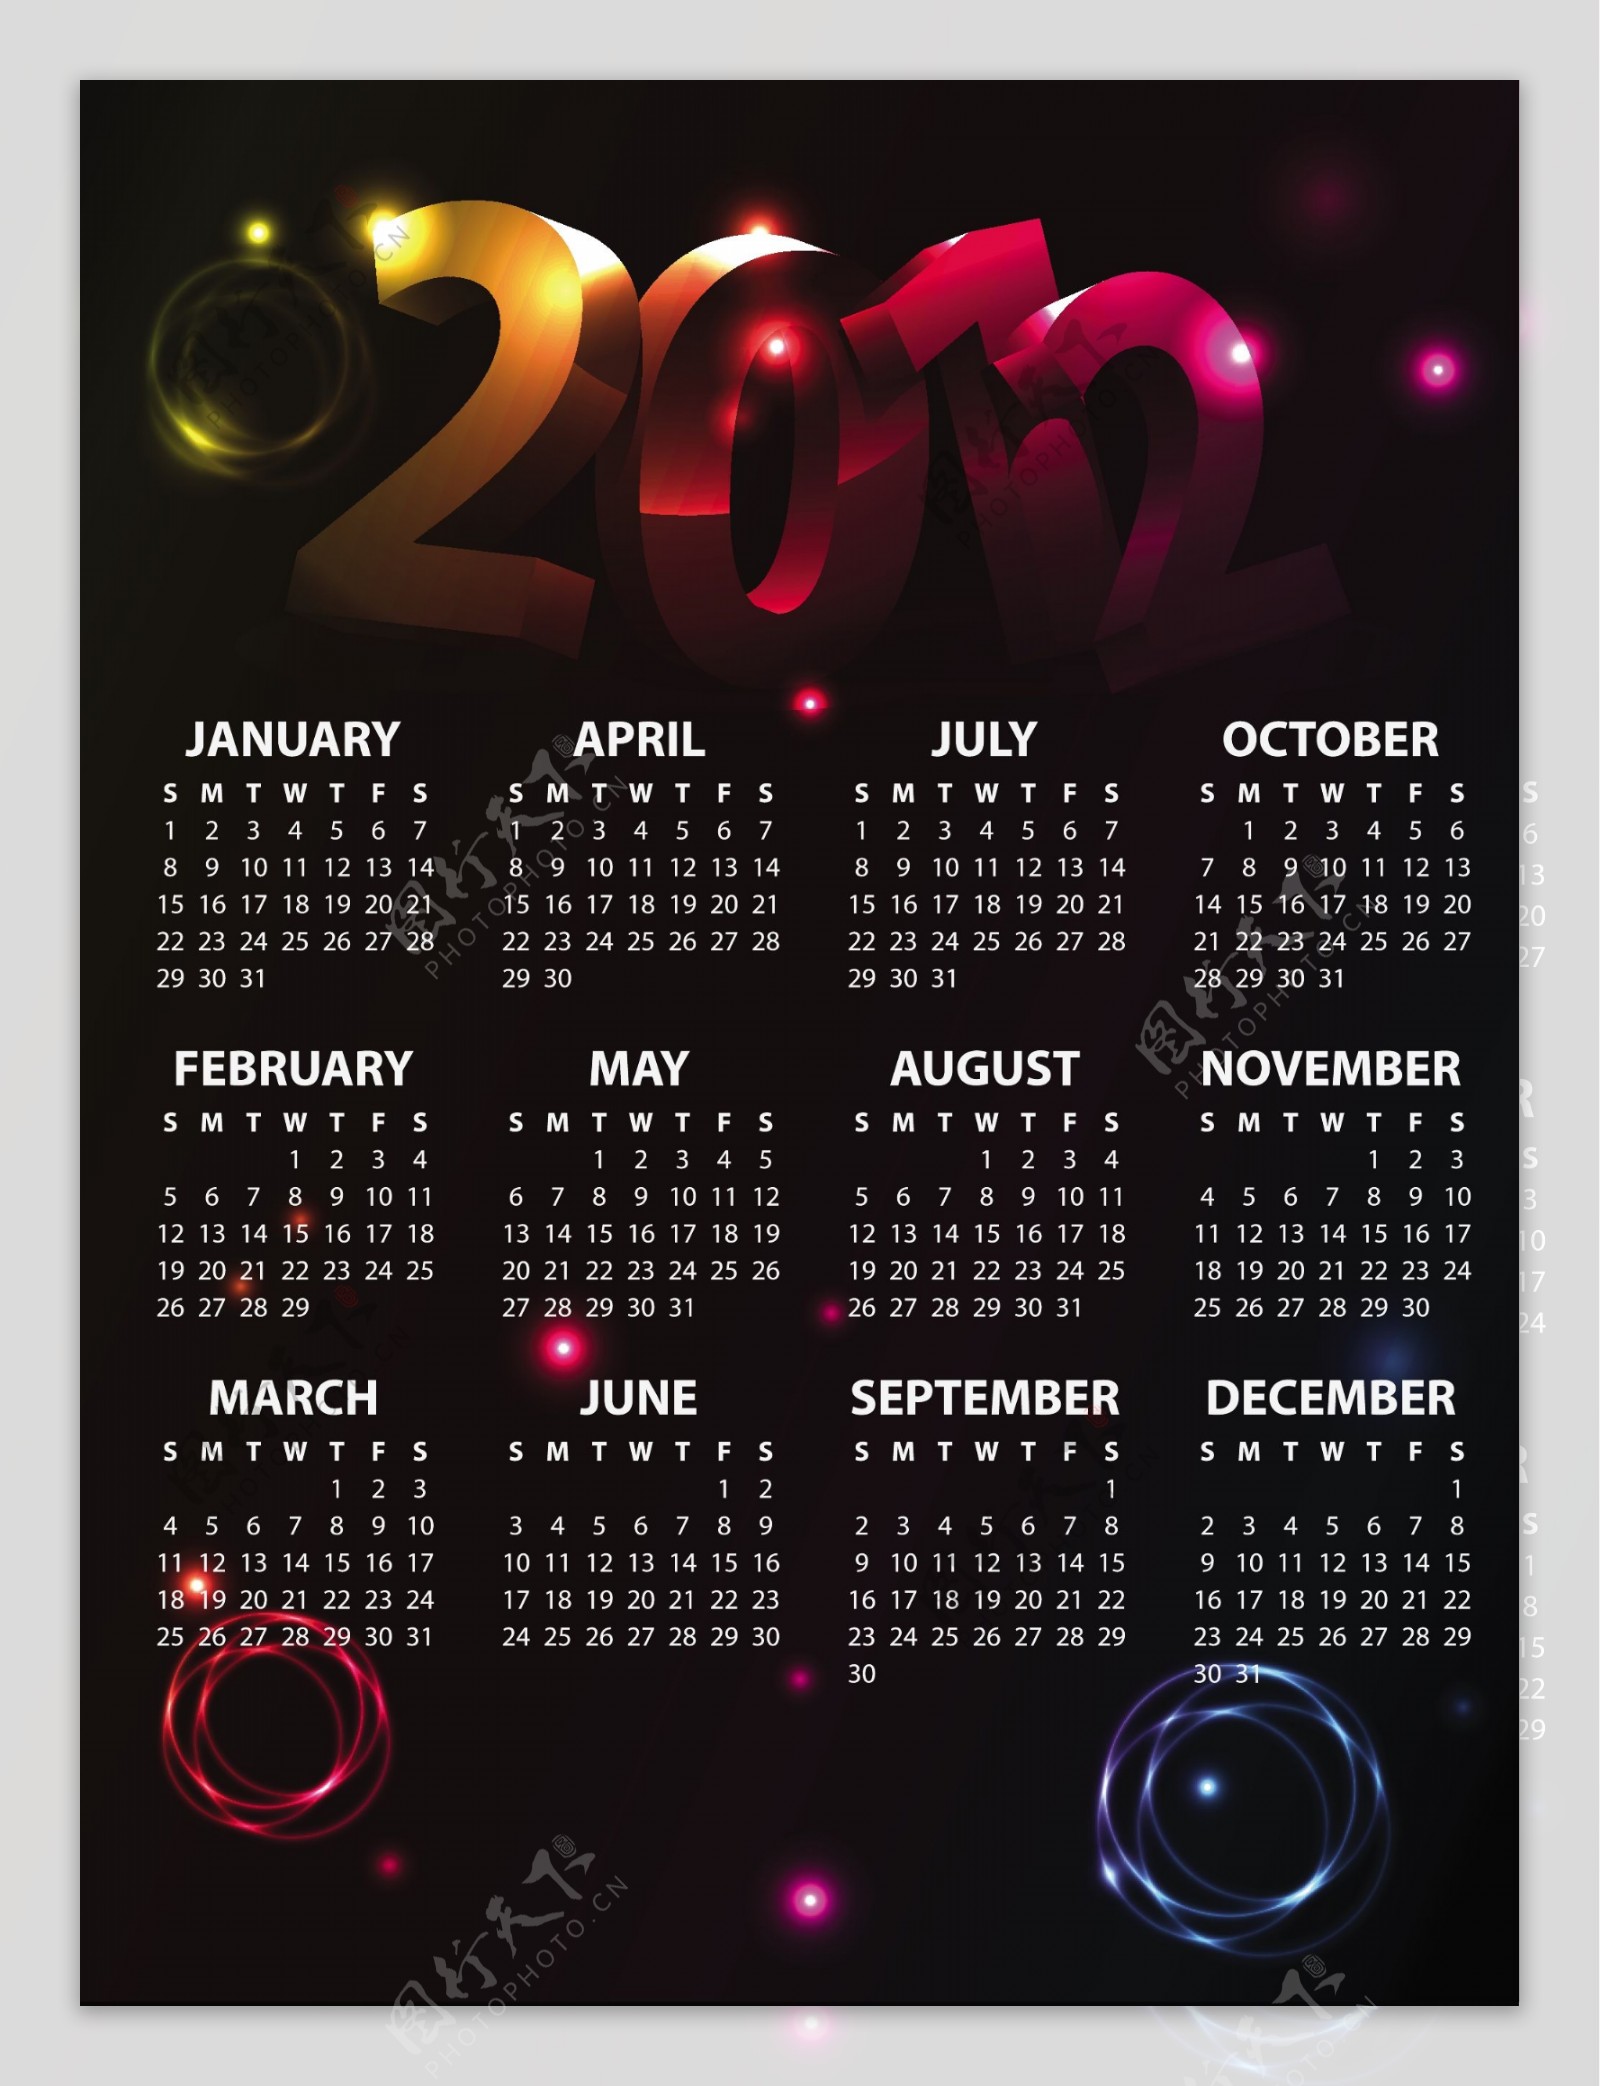 2012新年日历模板